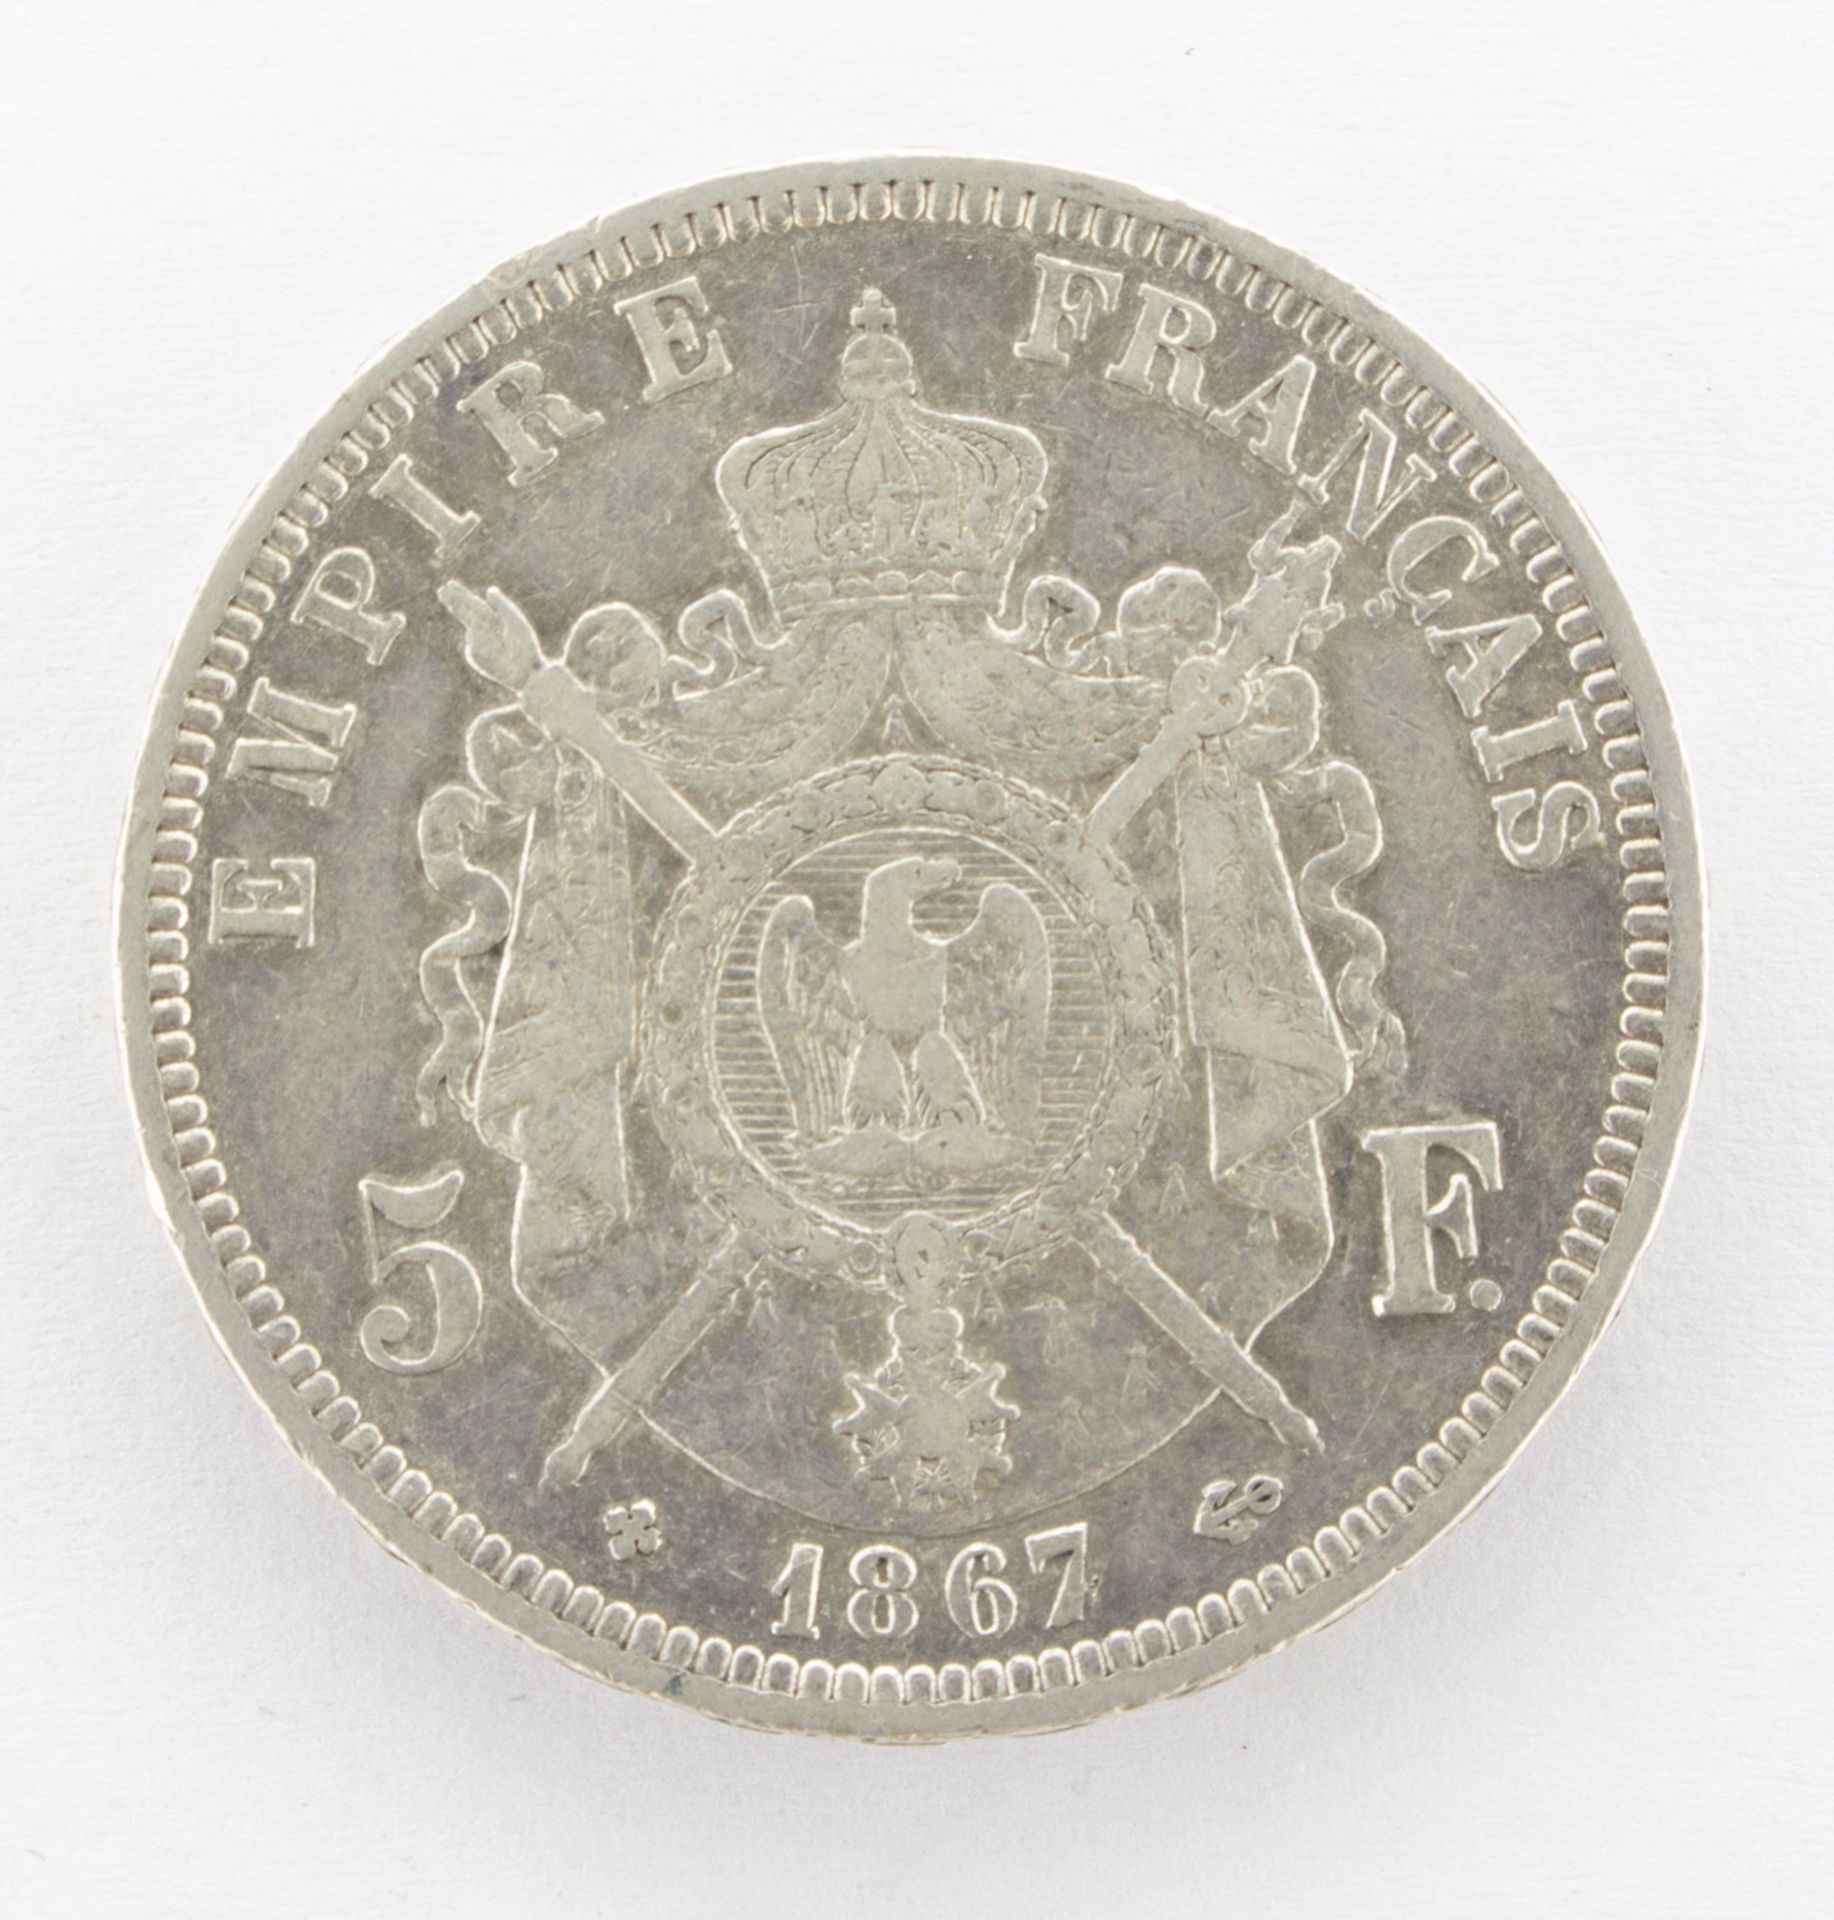 5 Francs - Image 2 of 2